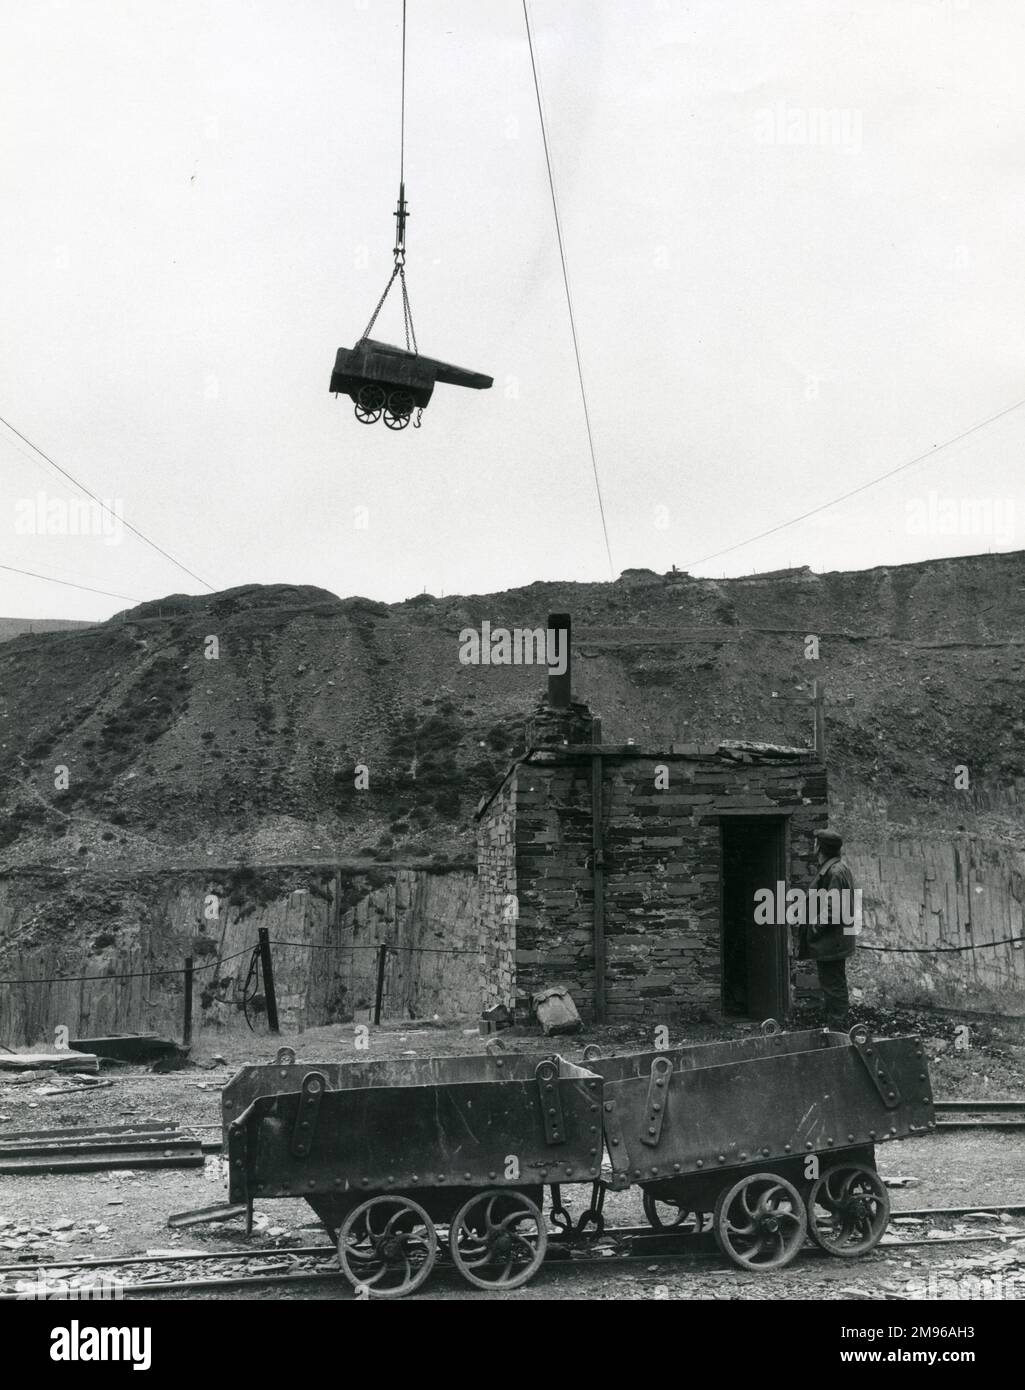 Un tramway plein d'ardoise, en hauteur dans l'air, étant lentement abaissé au sol à Penyrorsedd Slate Quarry, Nantlle Valley, Caernarvonshire (maintenant Gwynedd), au nord du pays de Galles. De là, l'ardoise sera transportée jusqu'aux hangars. Banque D'Images